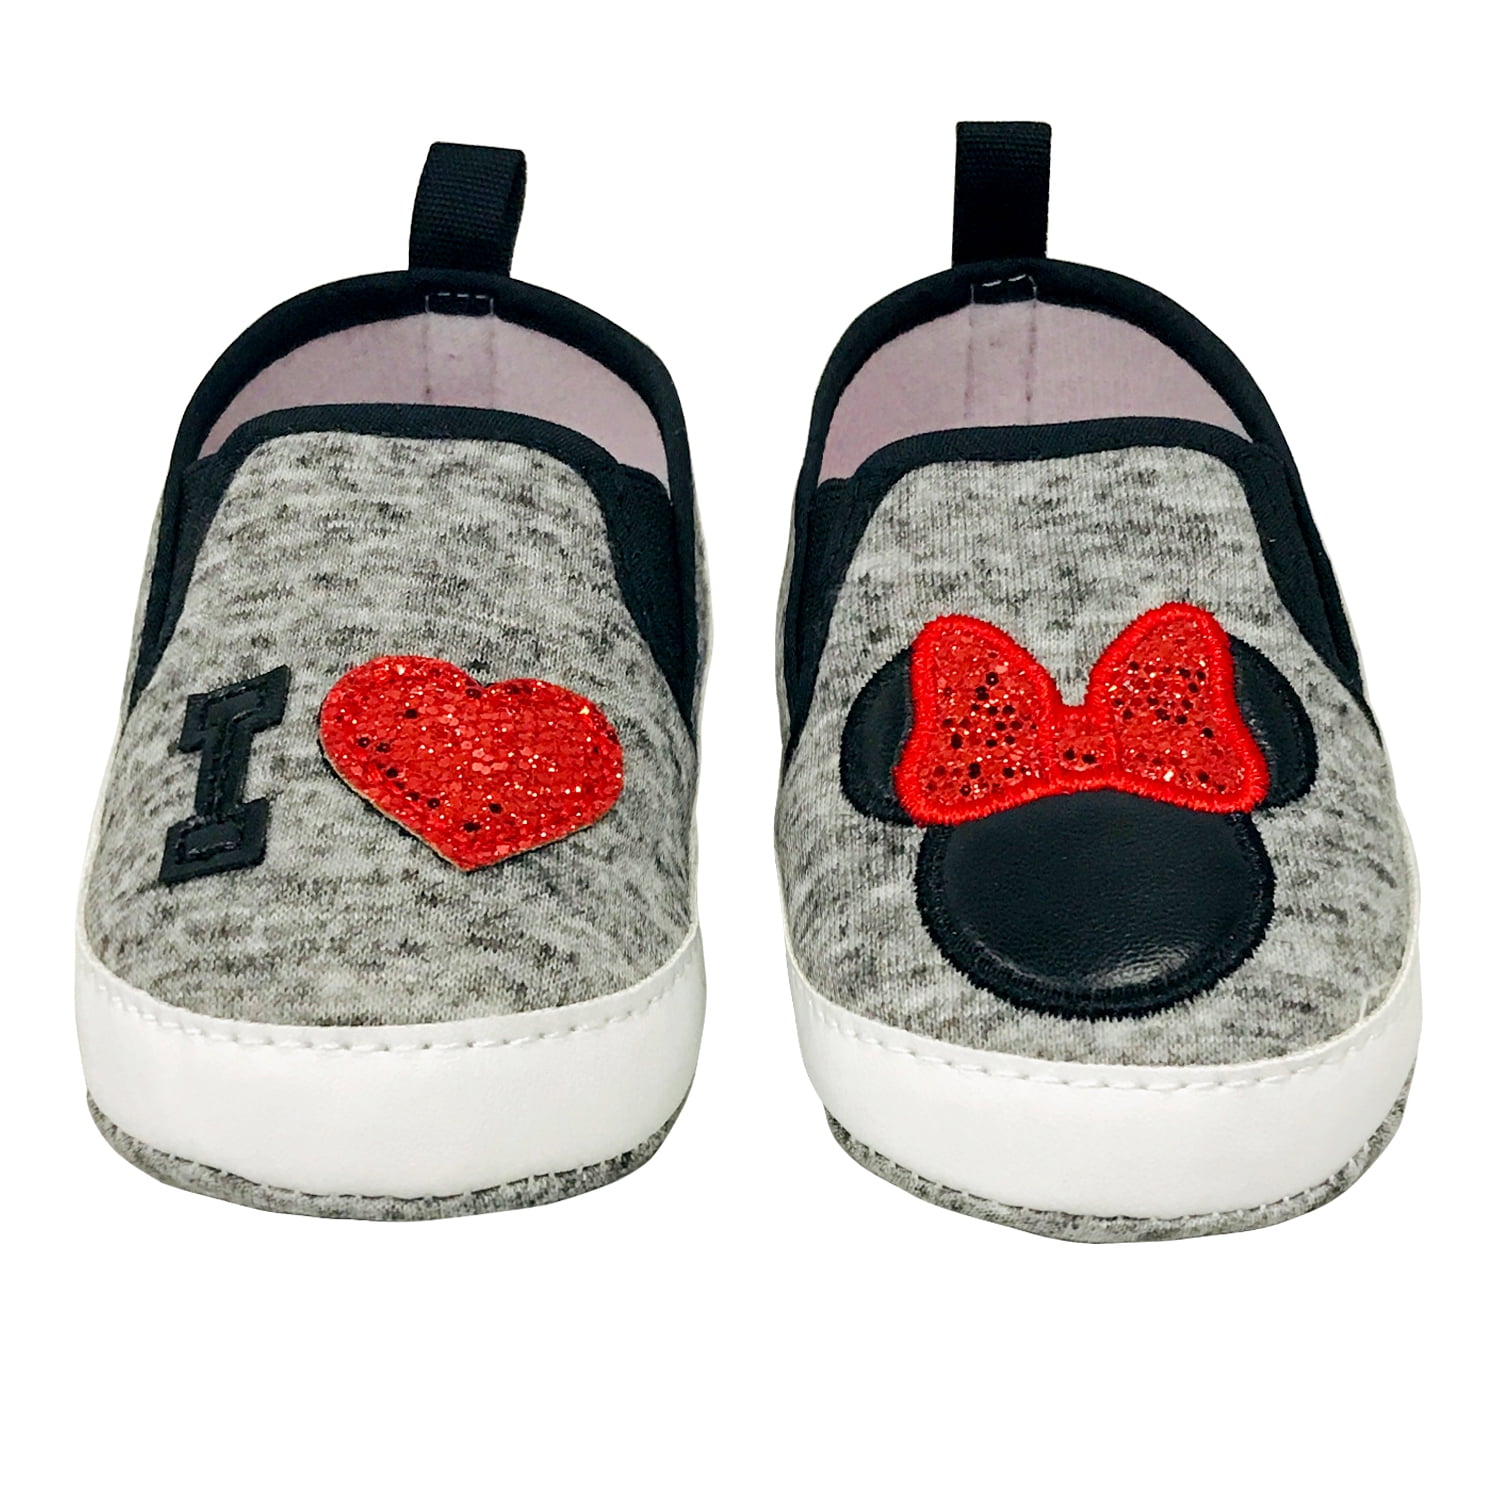 NIB Disney Minnie Mouse Crib Shoes STRIDE RITE Red White Dots 0-3m 3-6m 6-12m